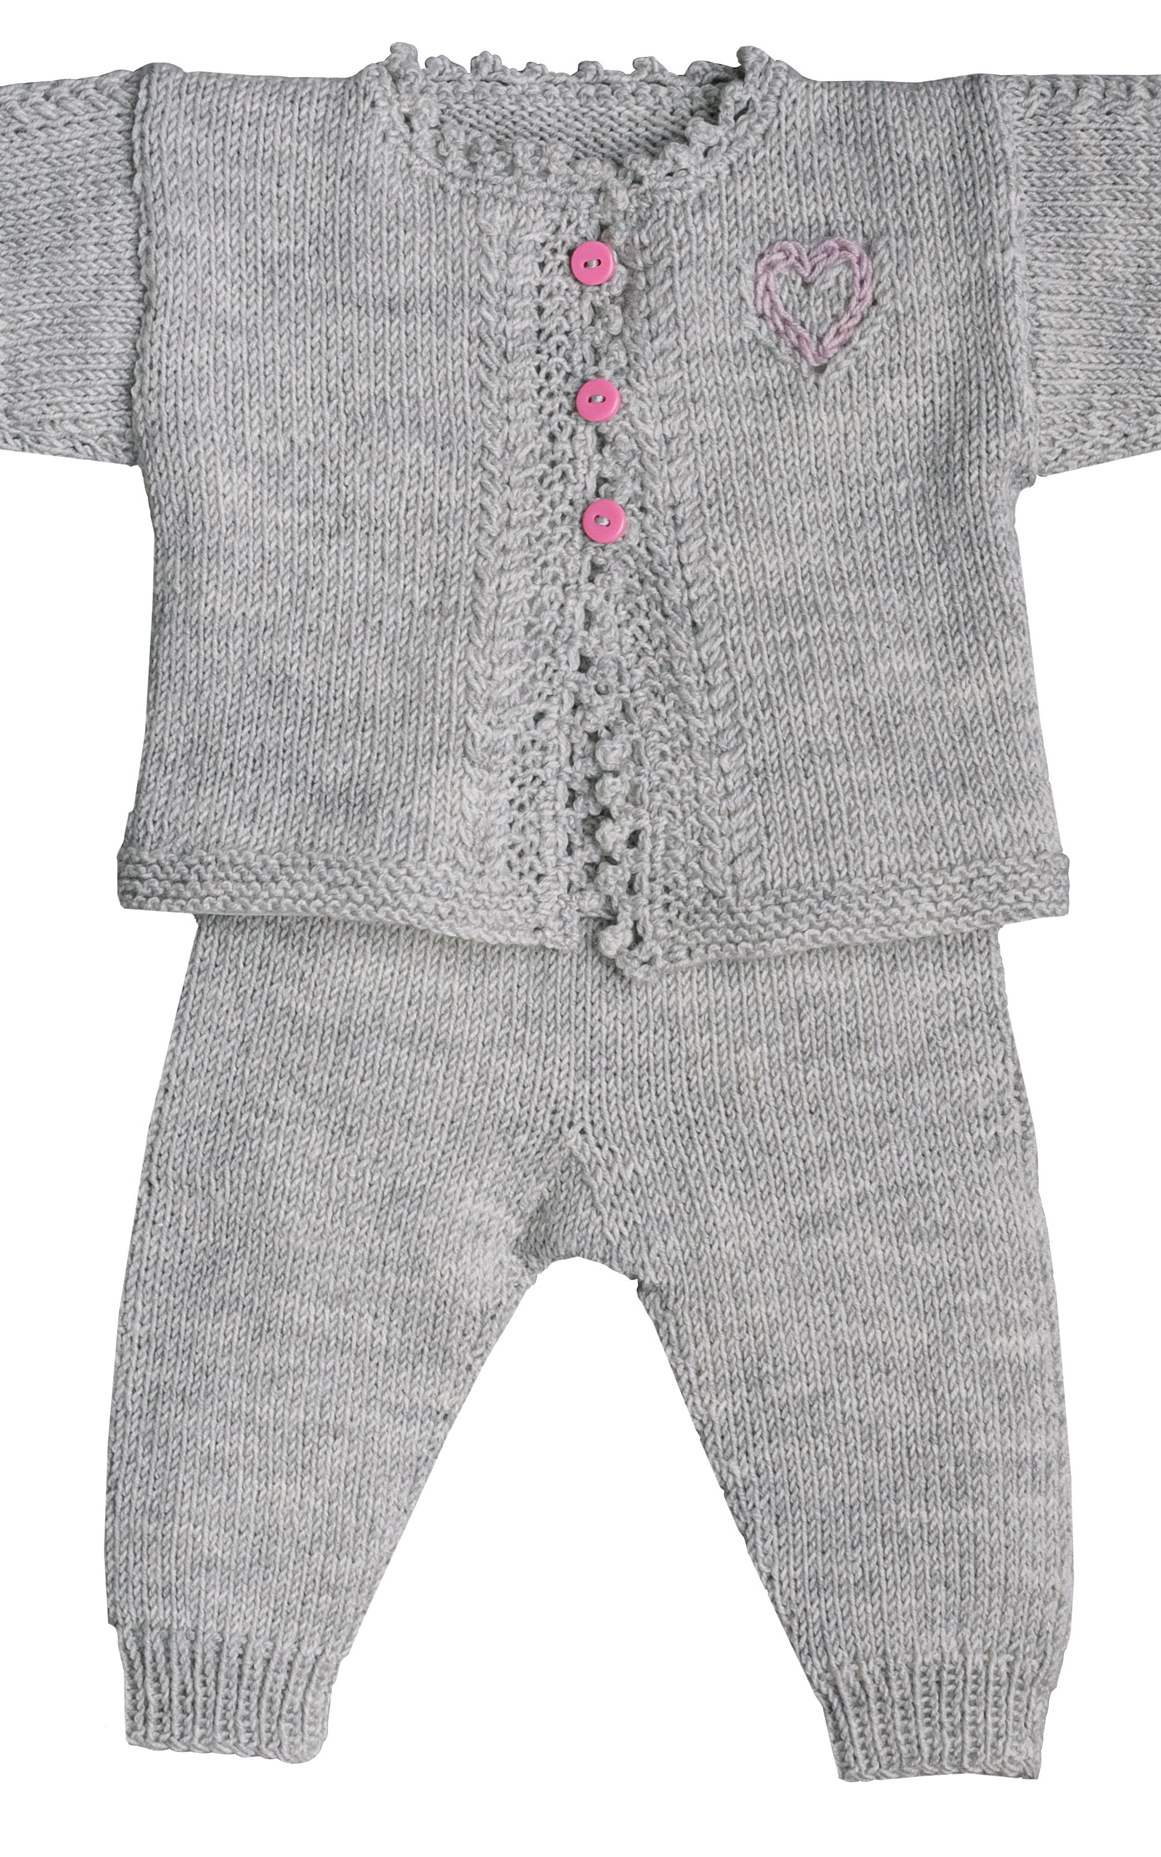 Baby lange Hose mit Rippenrand - Strickset von LANA GROSSA jetzt online kaufen bei OONIQUE